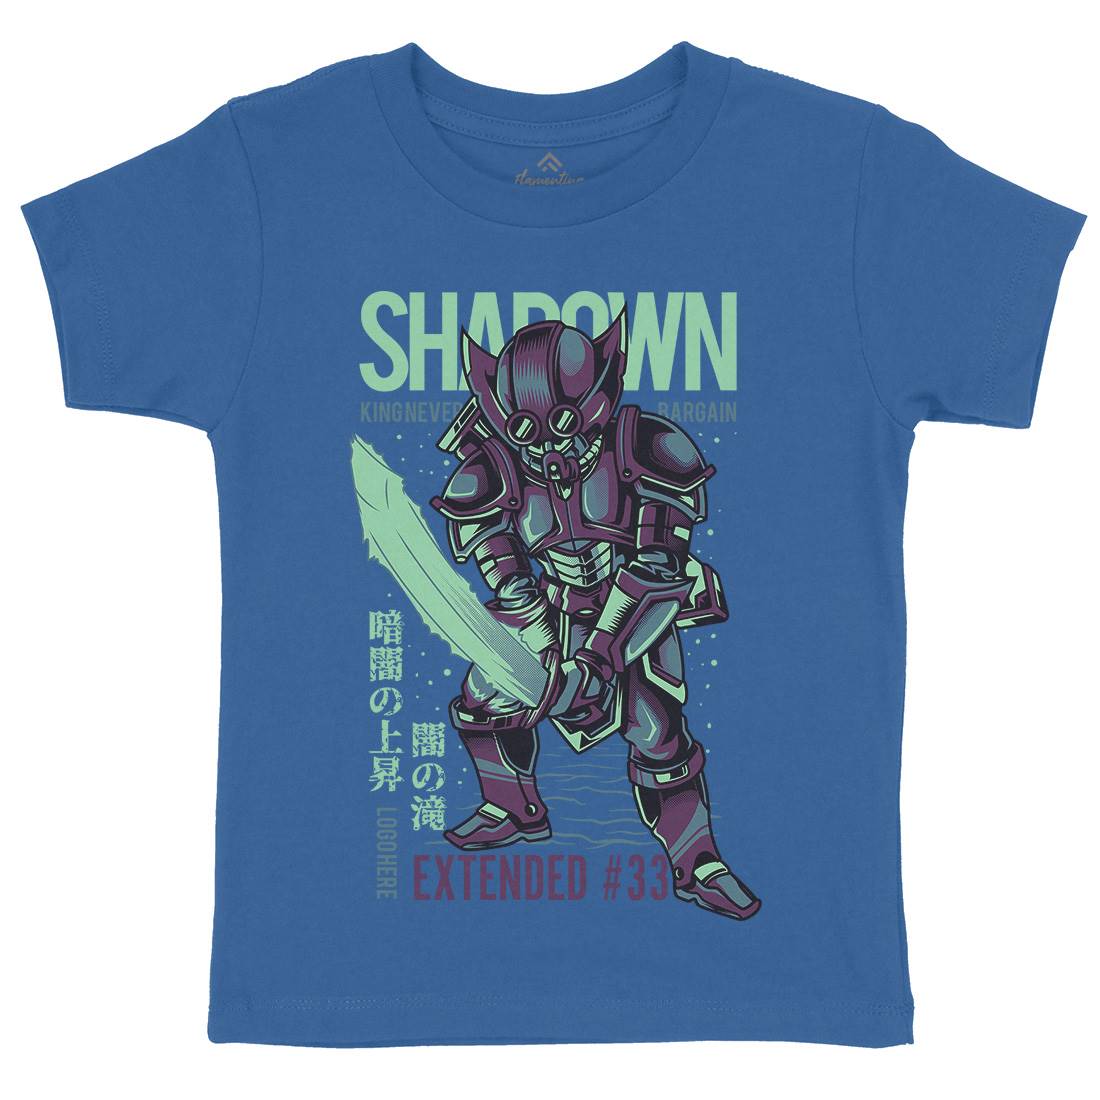 Shadown Knight Kids Crew Neck T-Shirt Warriors D812